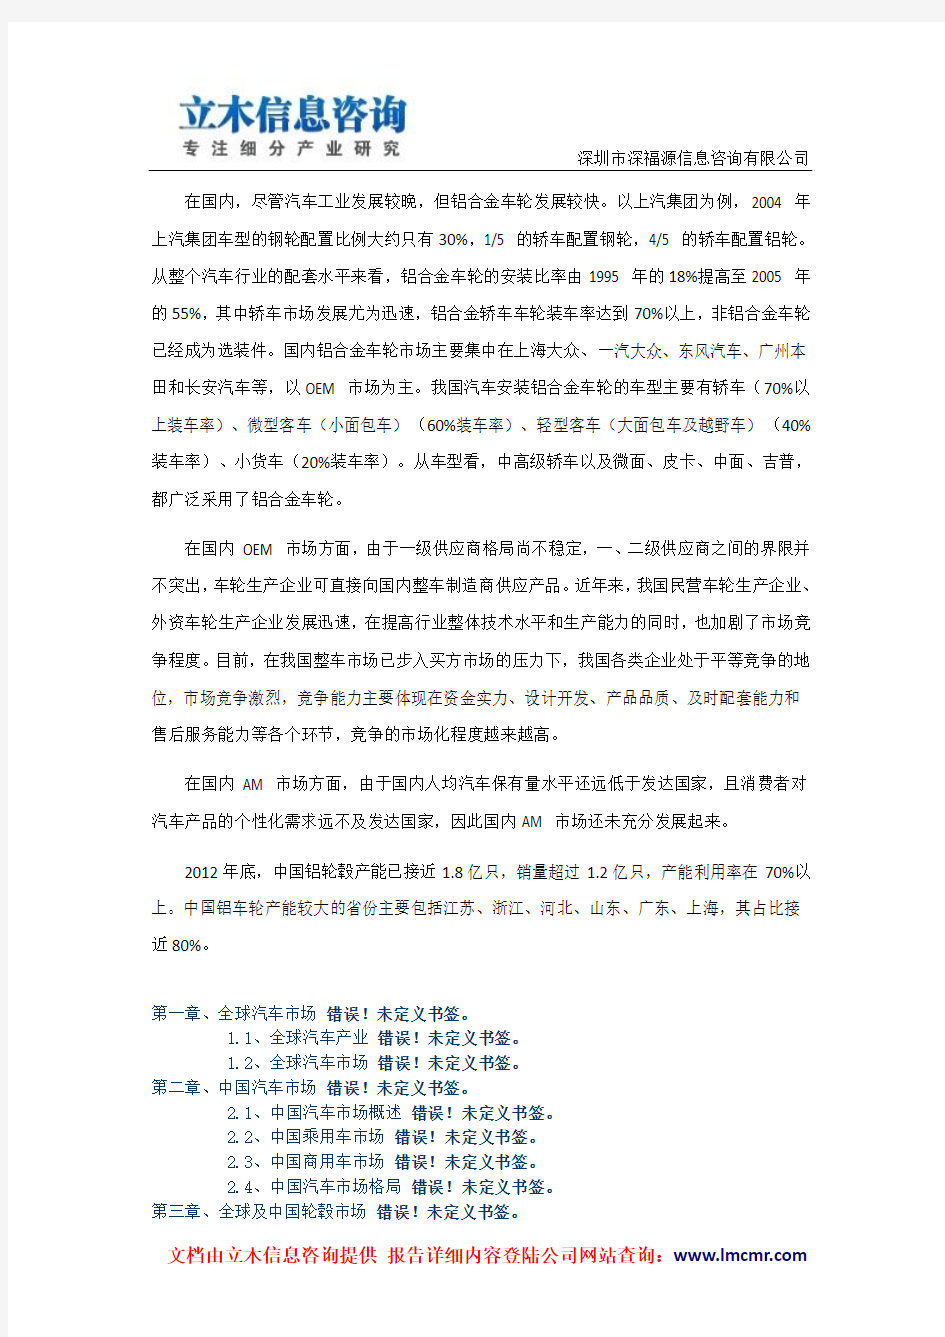 全球及中国汽车轮毂行业市场研究报告(2013版)